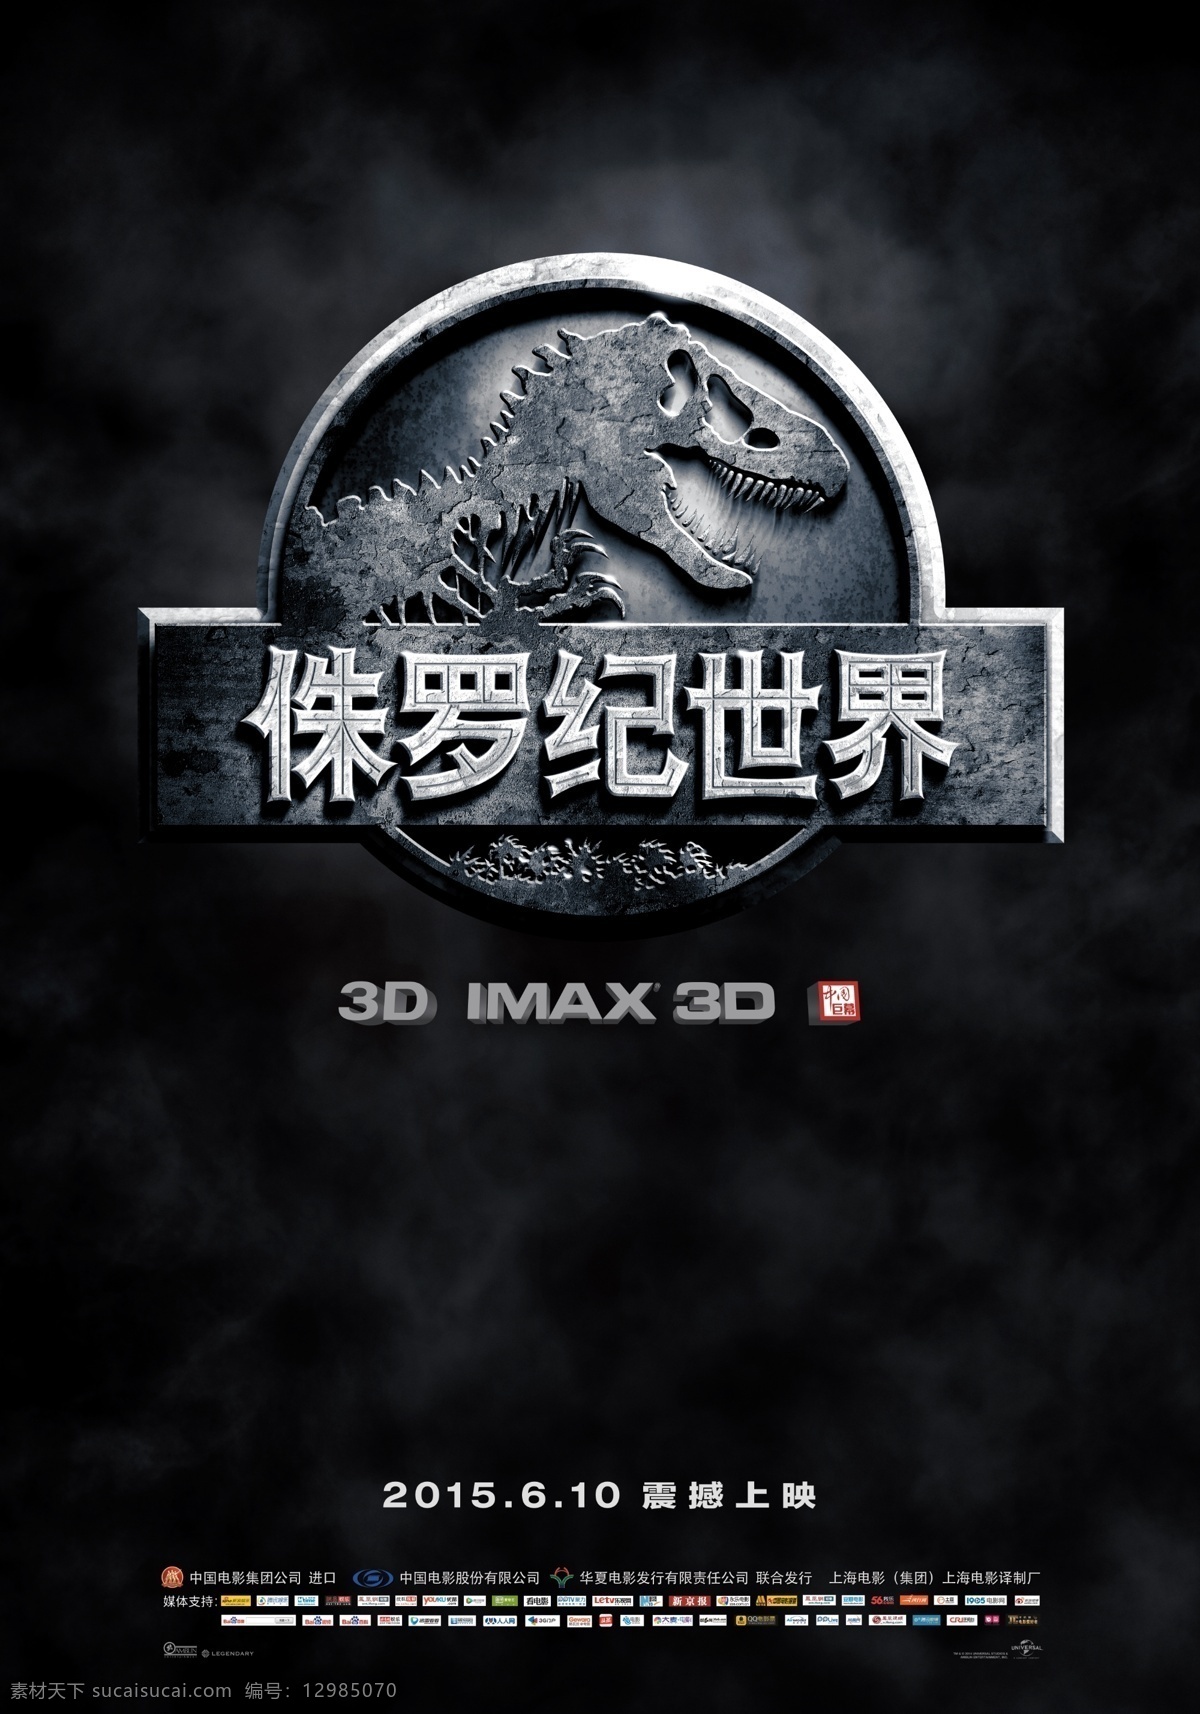 侏罗纪 世界 电影海报 侏罗纪世界 电影 海报 竖版 3d imax 6月10日 震撼上映 分层 黑色